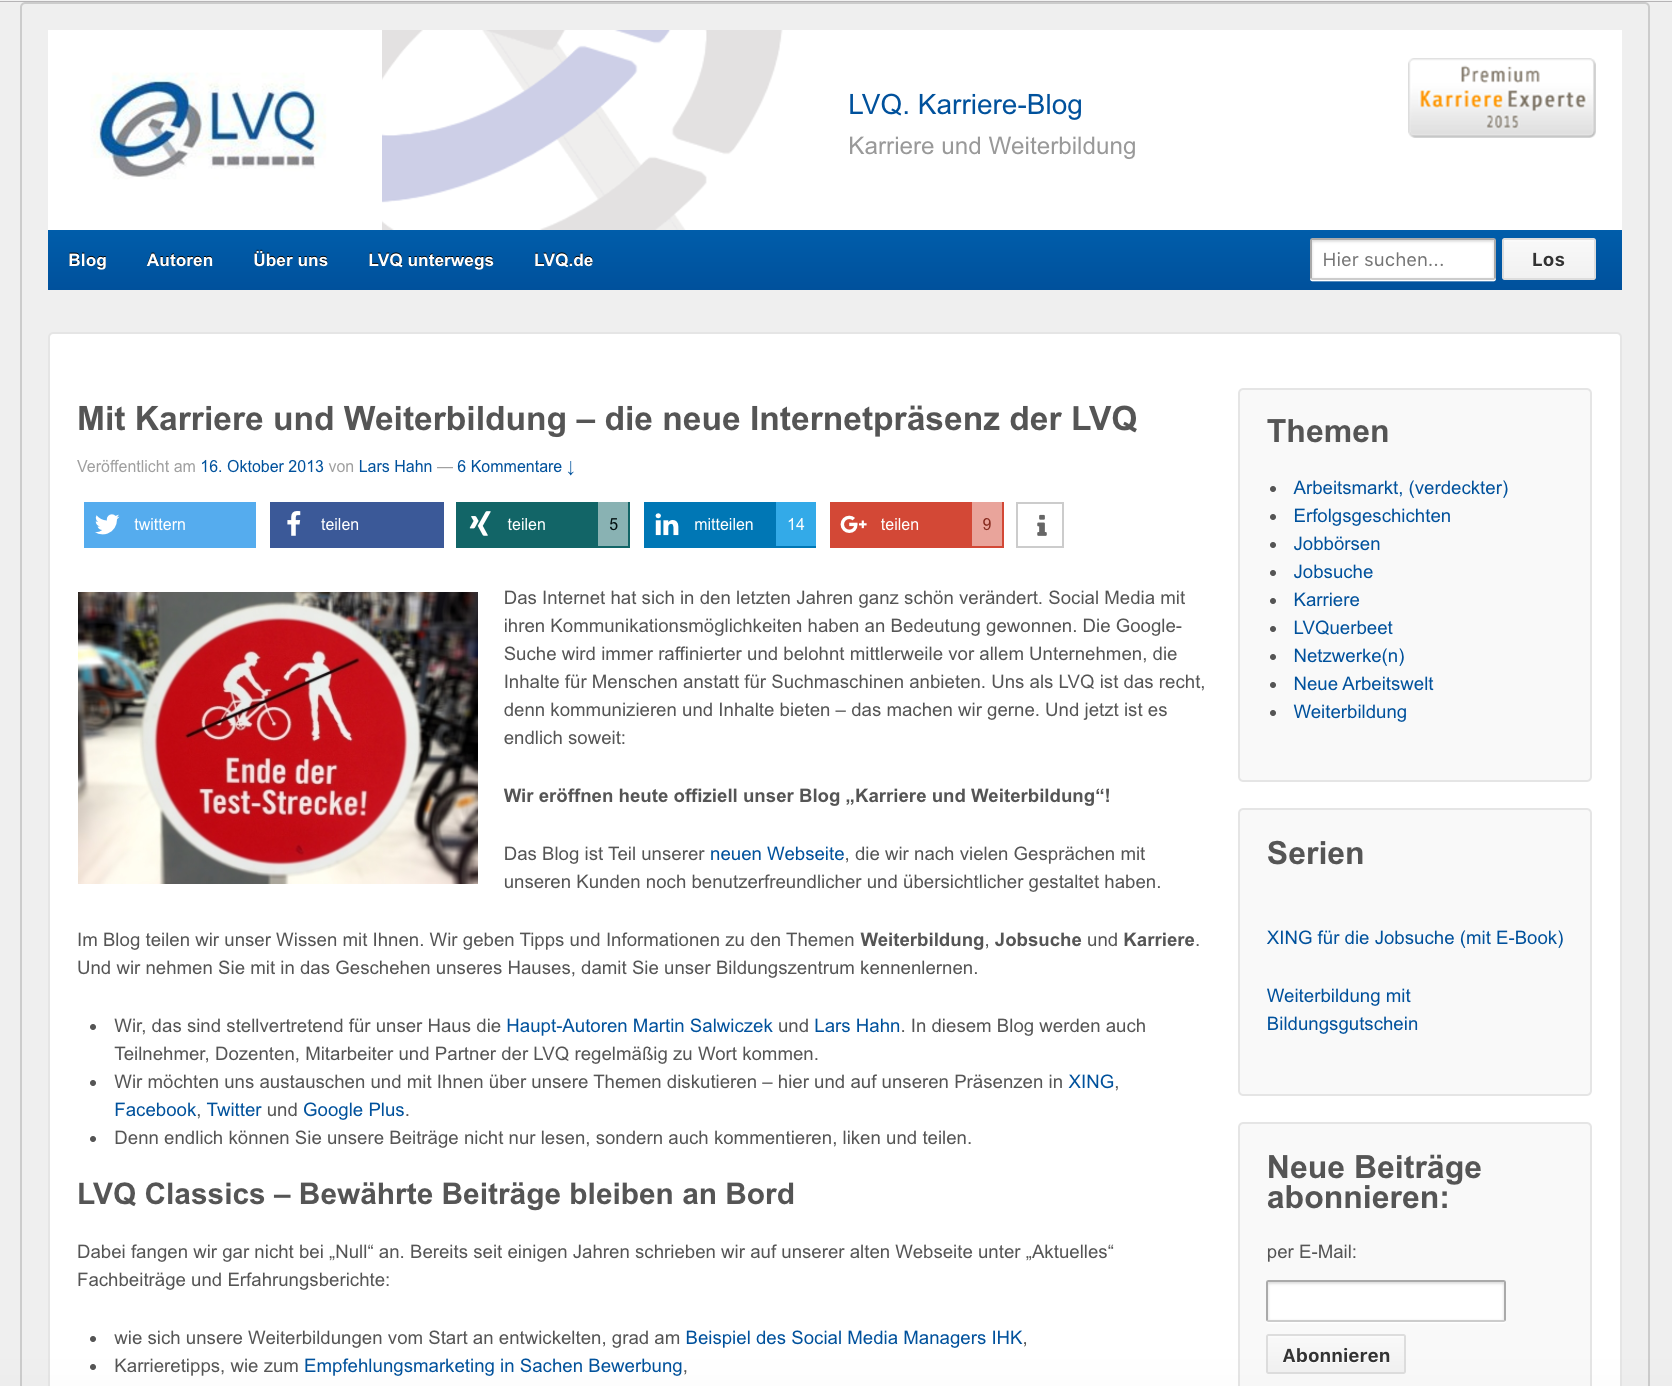 Im Jahr 2013 ging das LVQ Blog an den Start